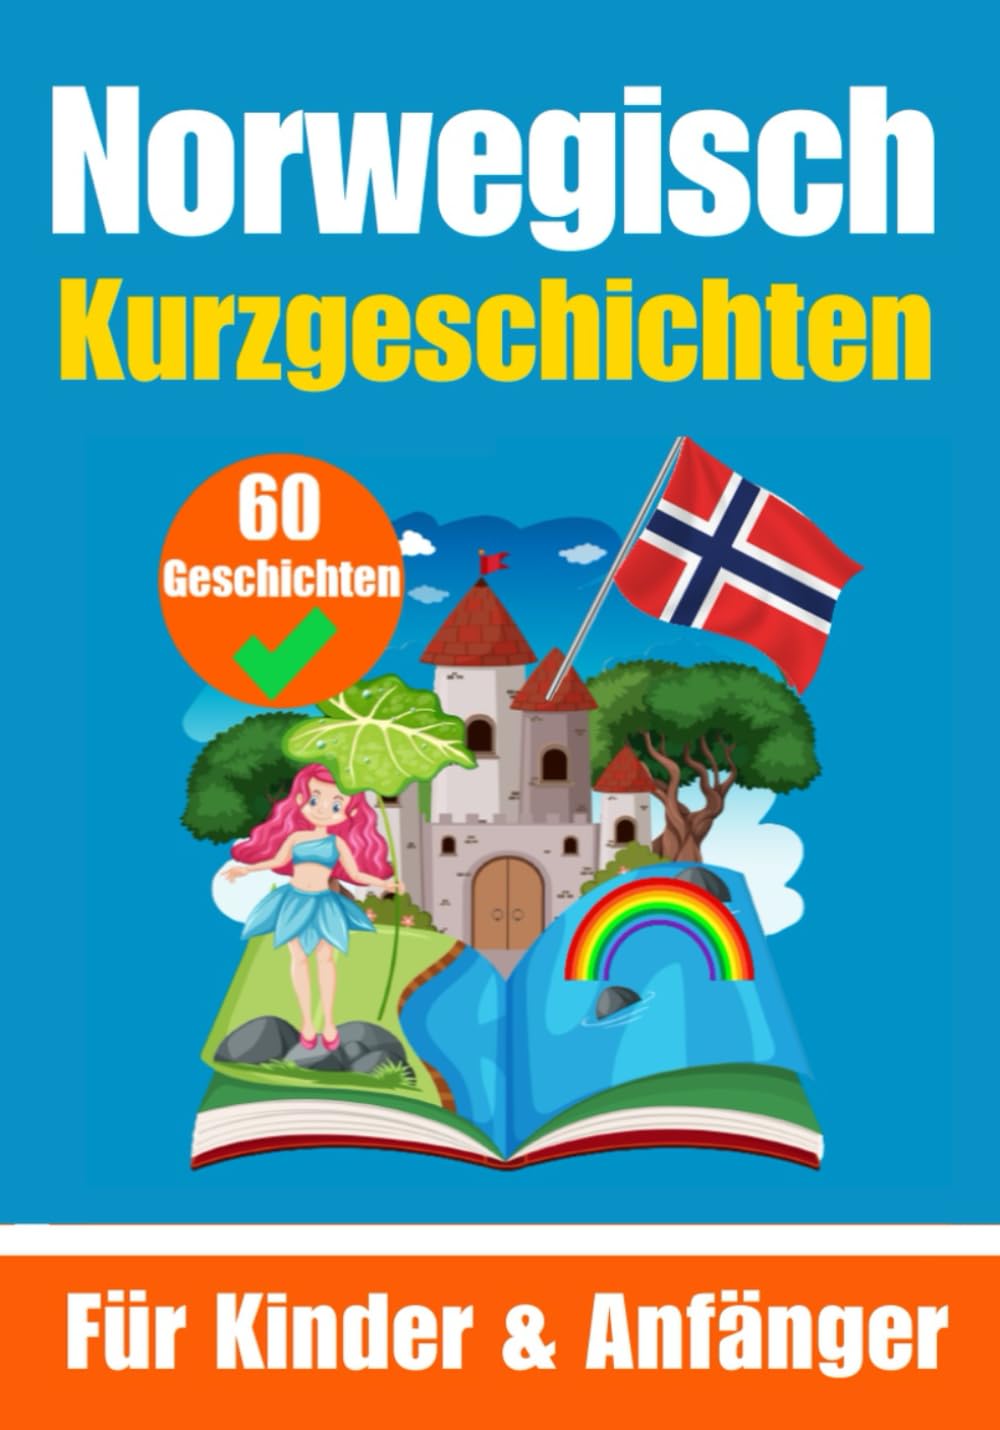 60 Kurzgeschichten auf Norwegisch | Für Kinder un Anfänger